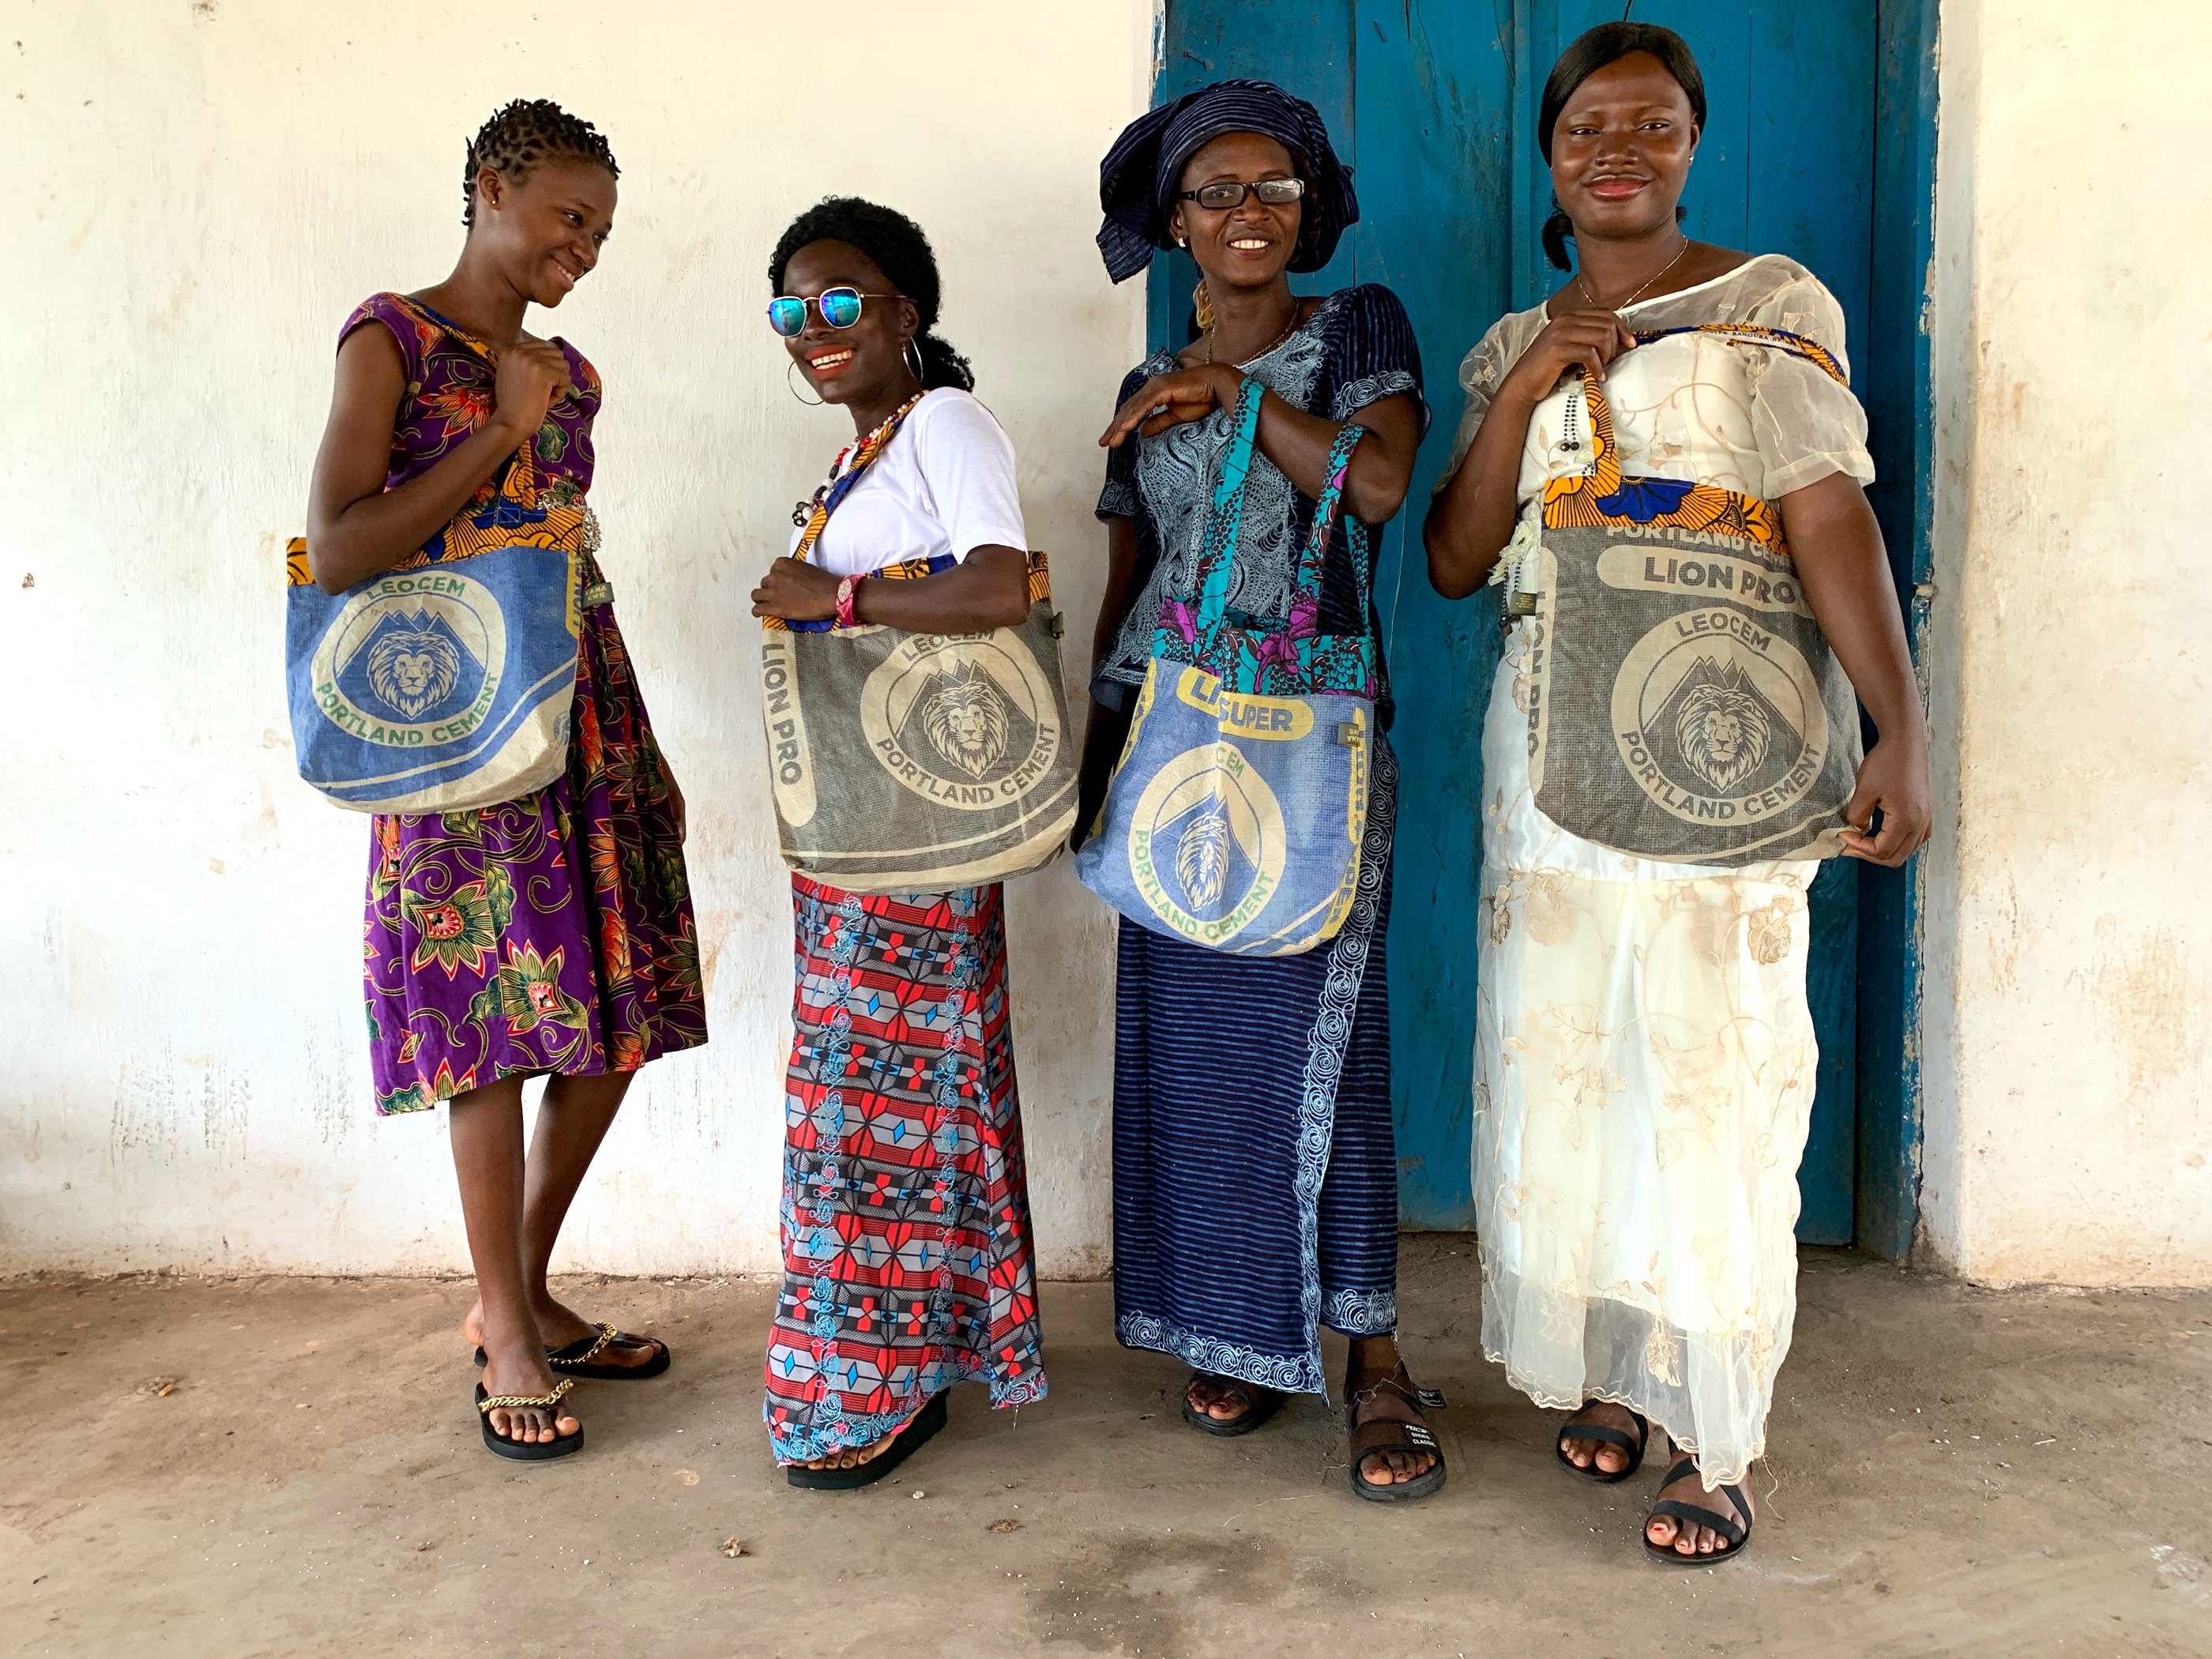 Vier Frauen aus Sierra Leone mit bunten Taschen, auf den Taschen sind Löwen abgebildet